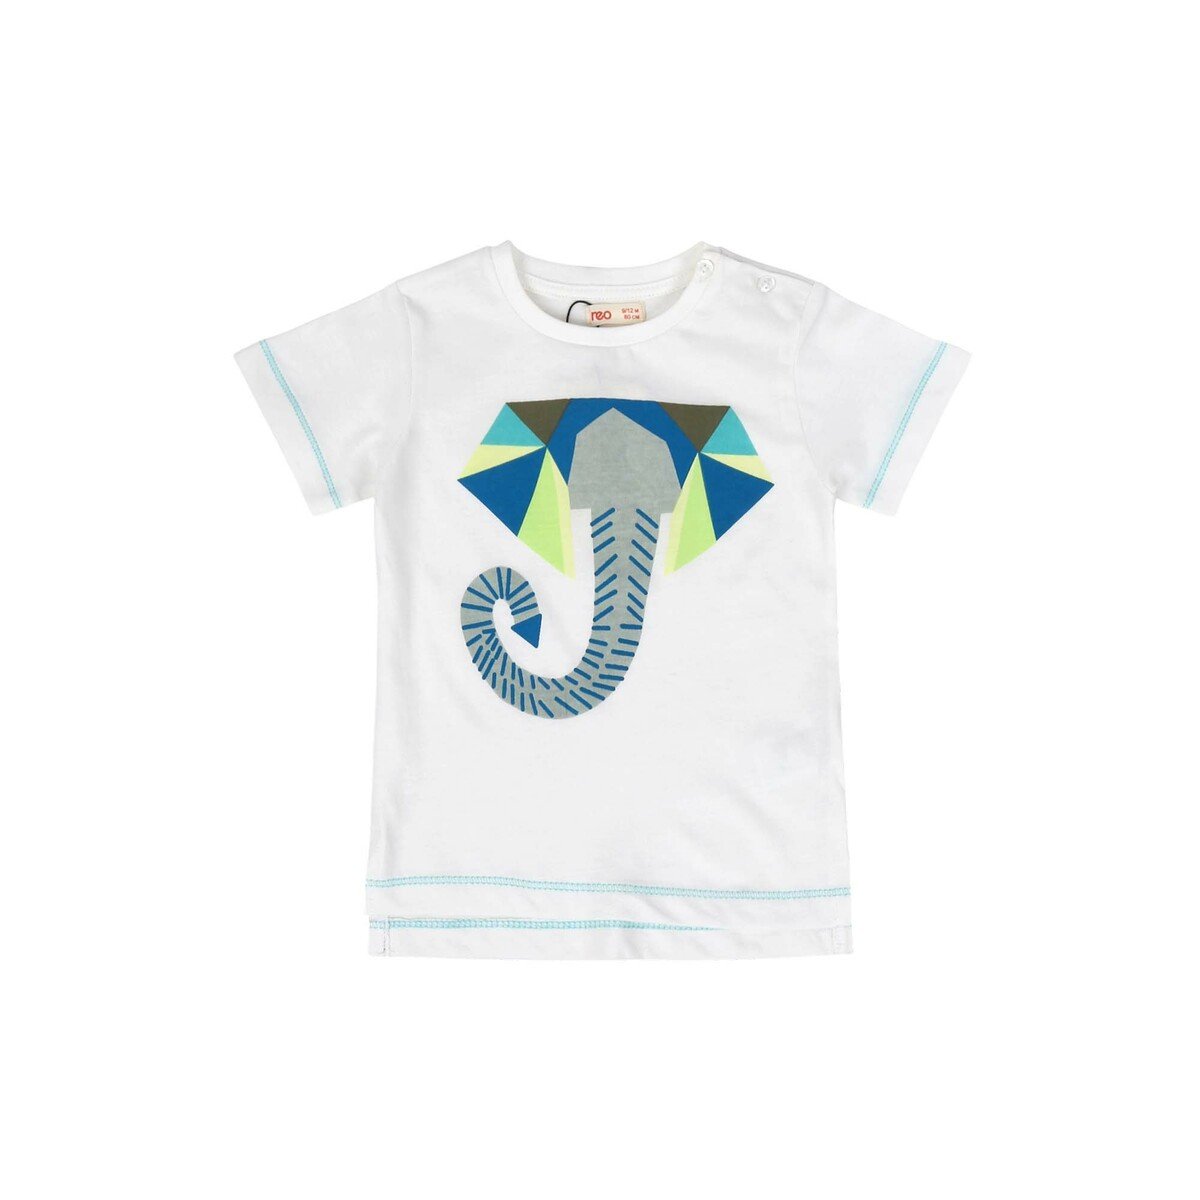 Reo Infant Boys T-Shirt B9IB486-A, 12-18M